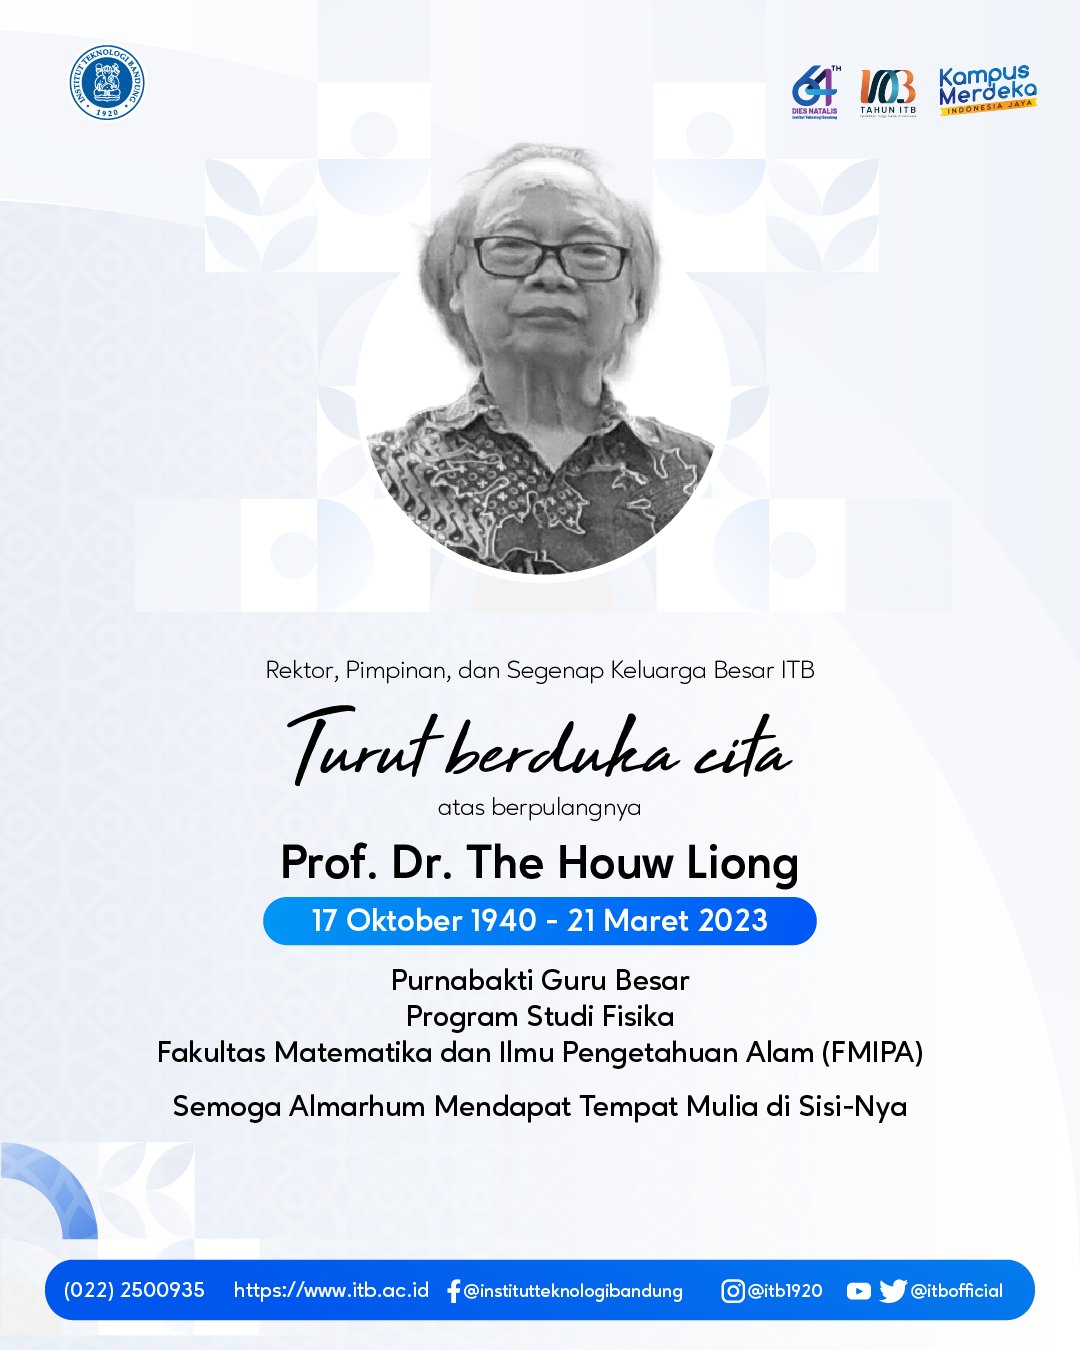 ITB Berduka, Guru Besar FMIPA Prof. The Huow Liong Berpulang